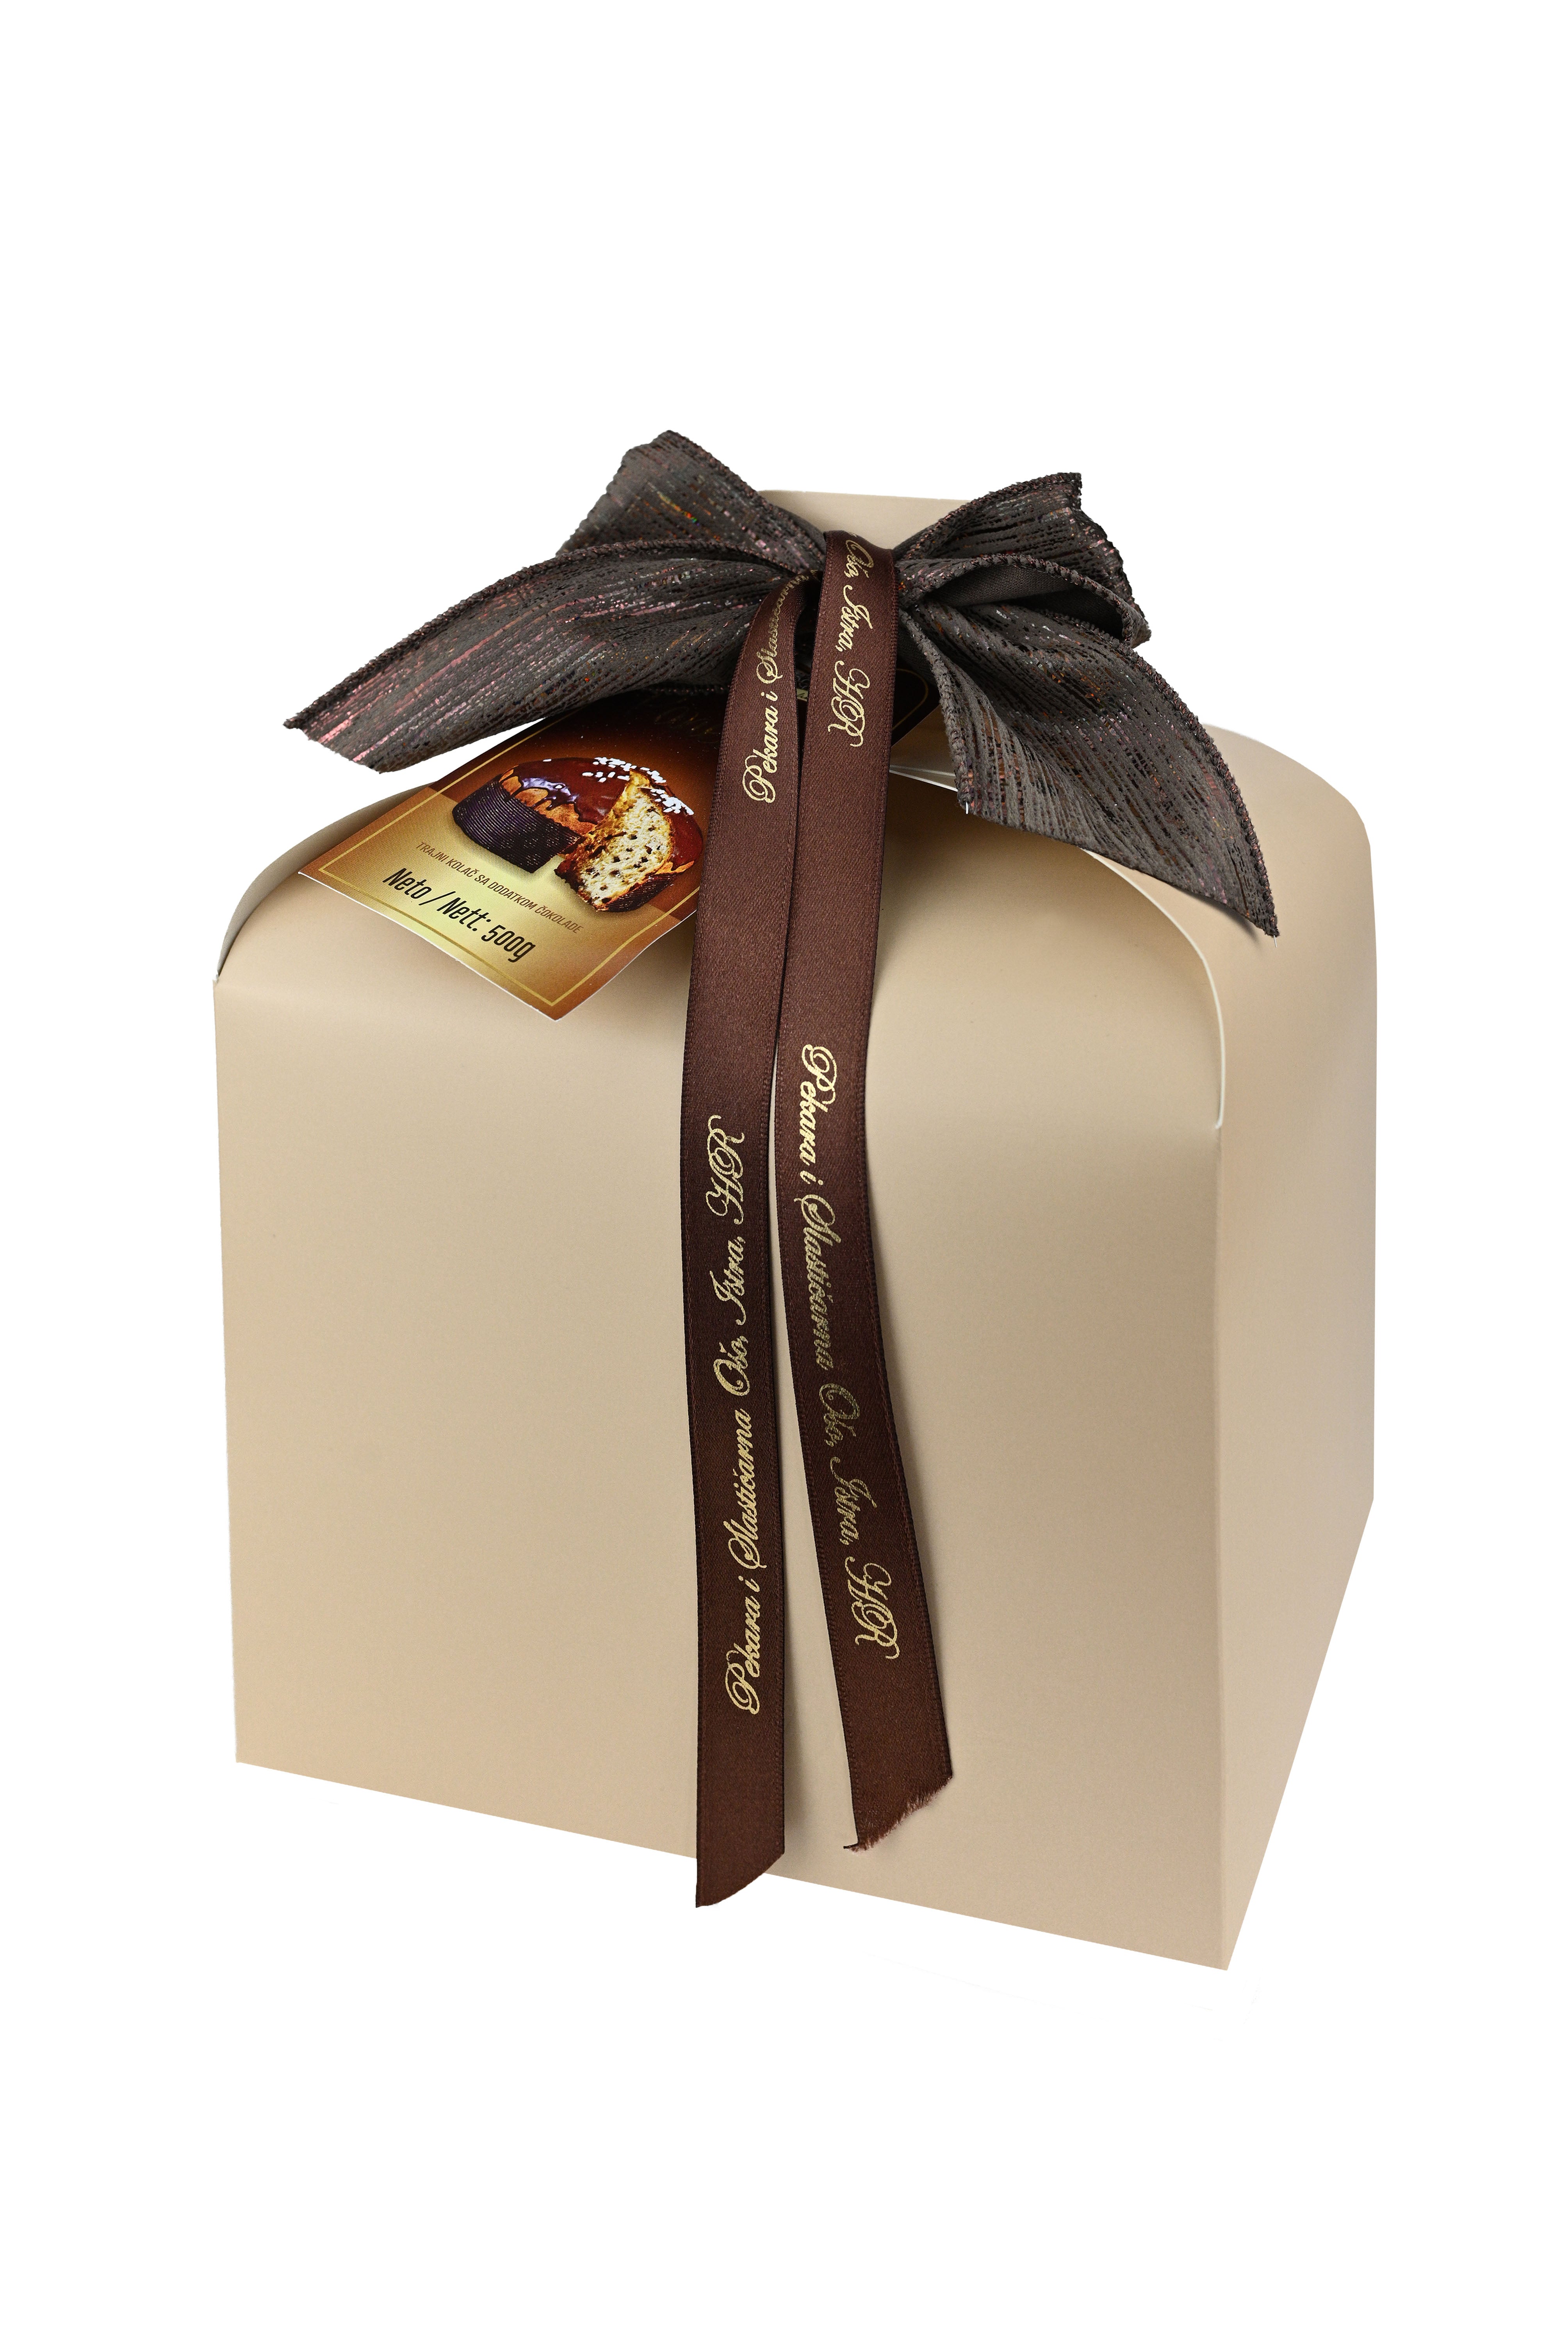 Domaći Panettone od čokolade u ukrasnoj kutiji